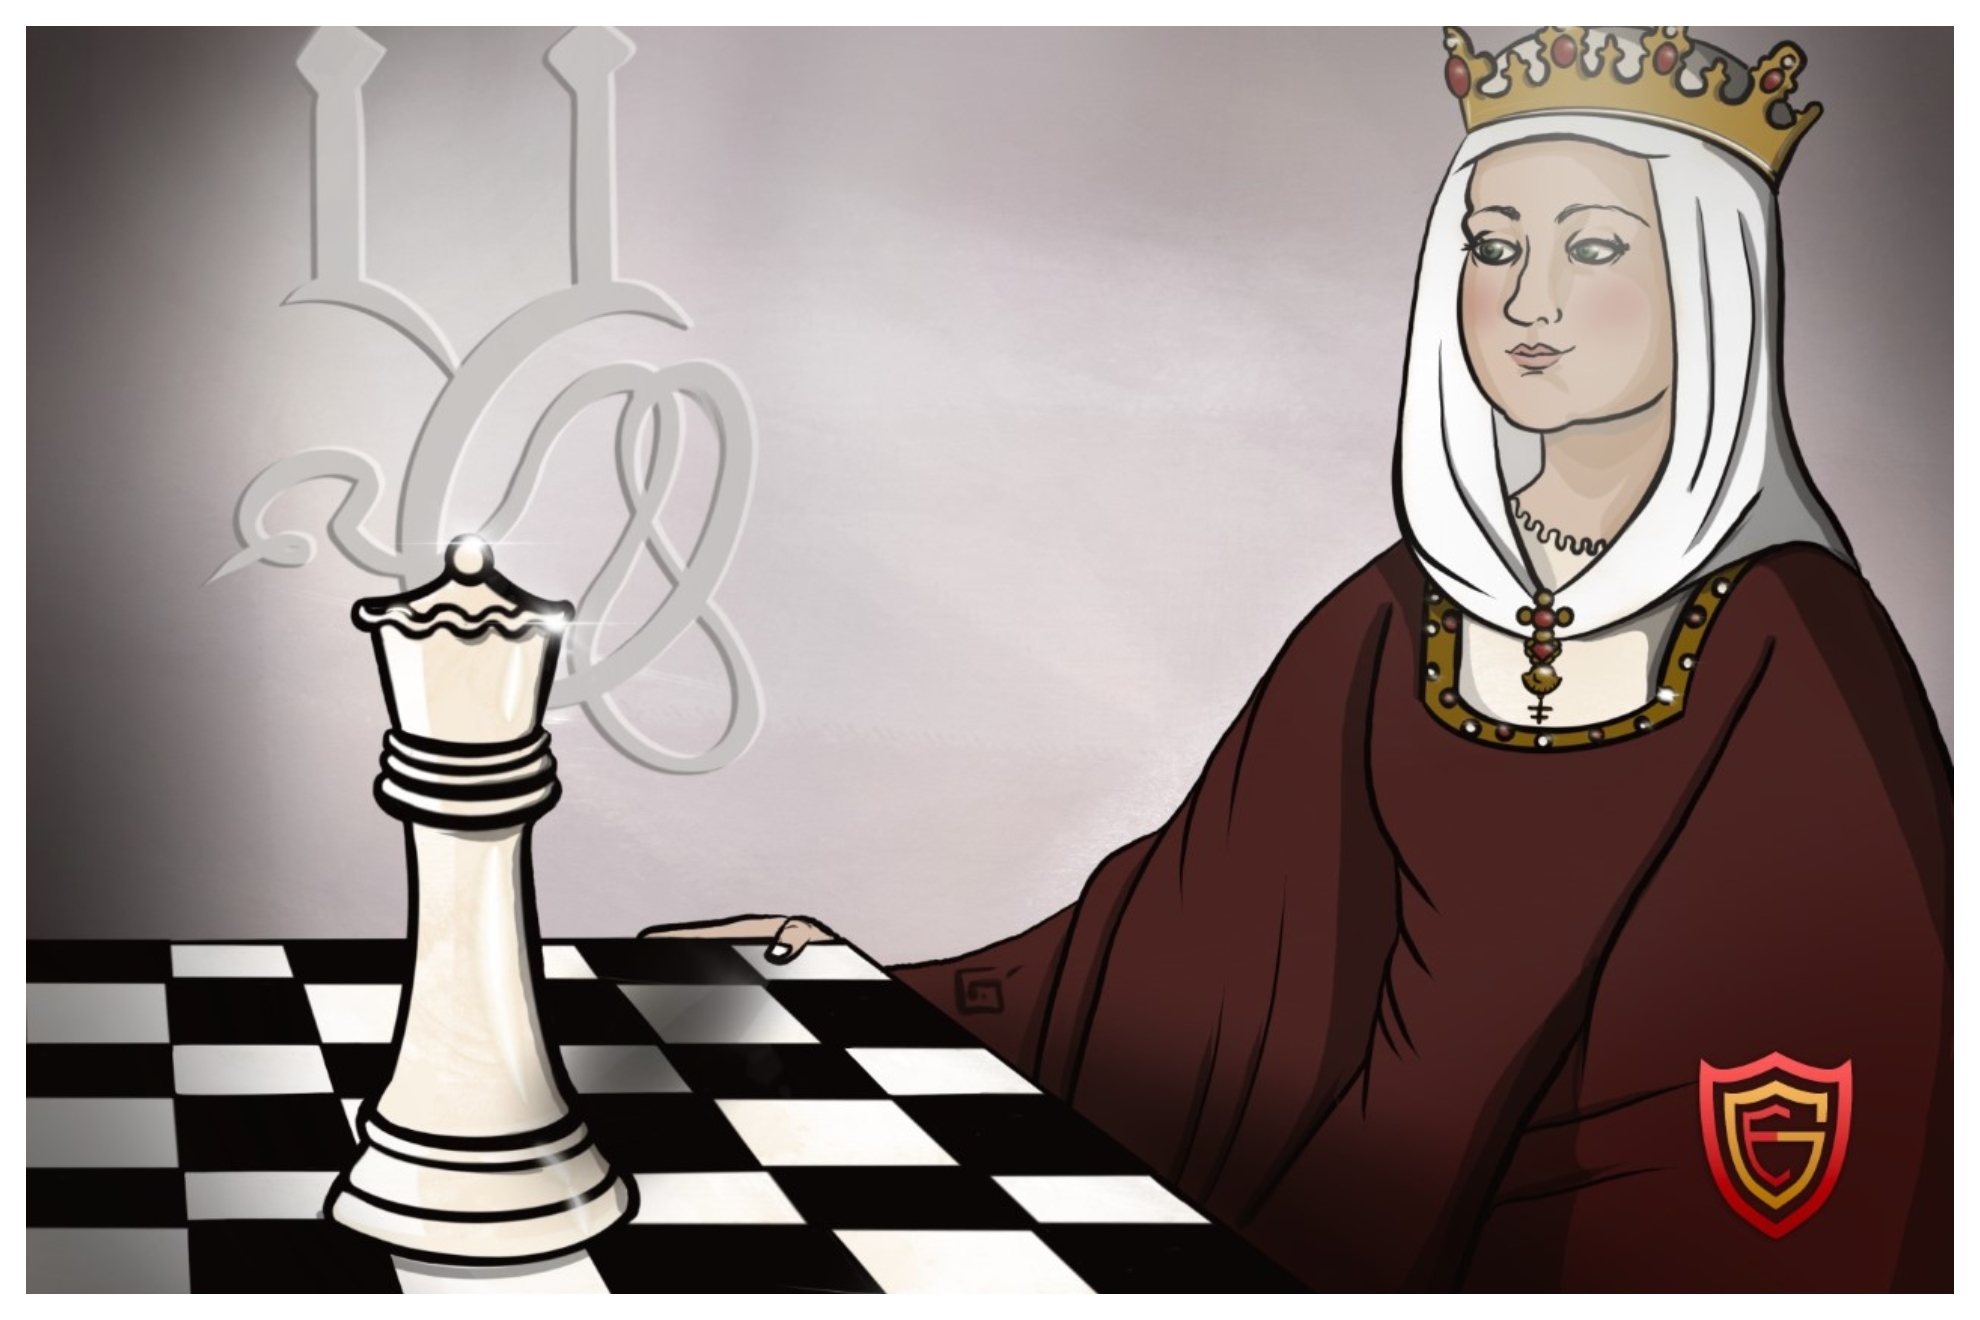 Introducción al Ajedrez ¿Qué es el ajedrez? ¿Cuáles son las piezas? 